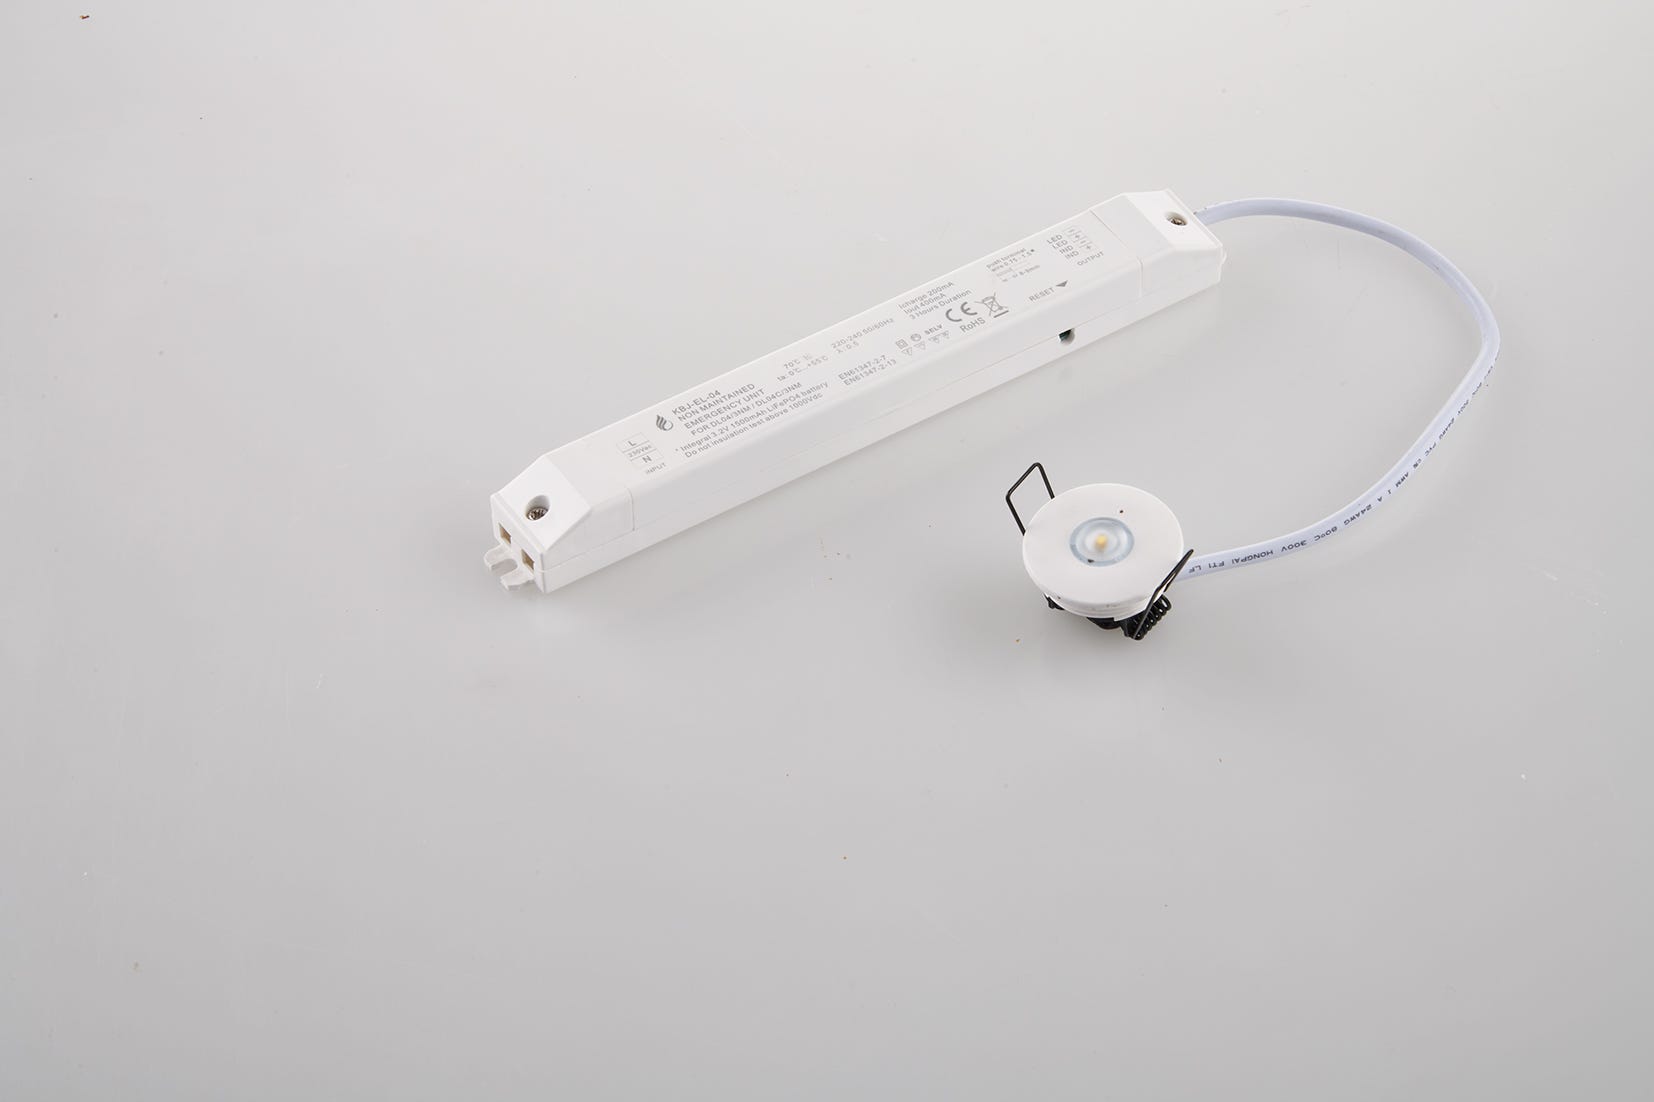 Encastré LED blanche HELP avec éclairage de secours avec batterie 3h  incluse 1,2W 4000K (lumière naturelle)